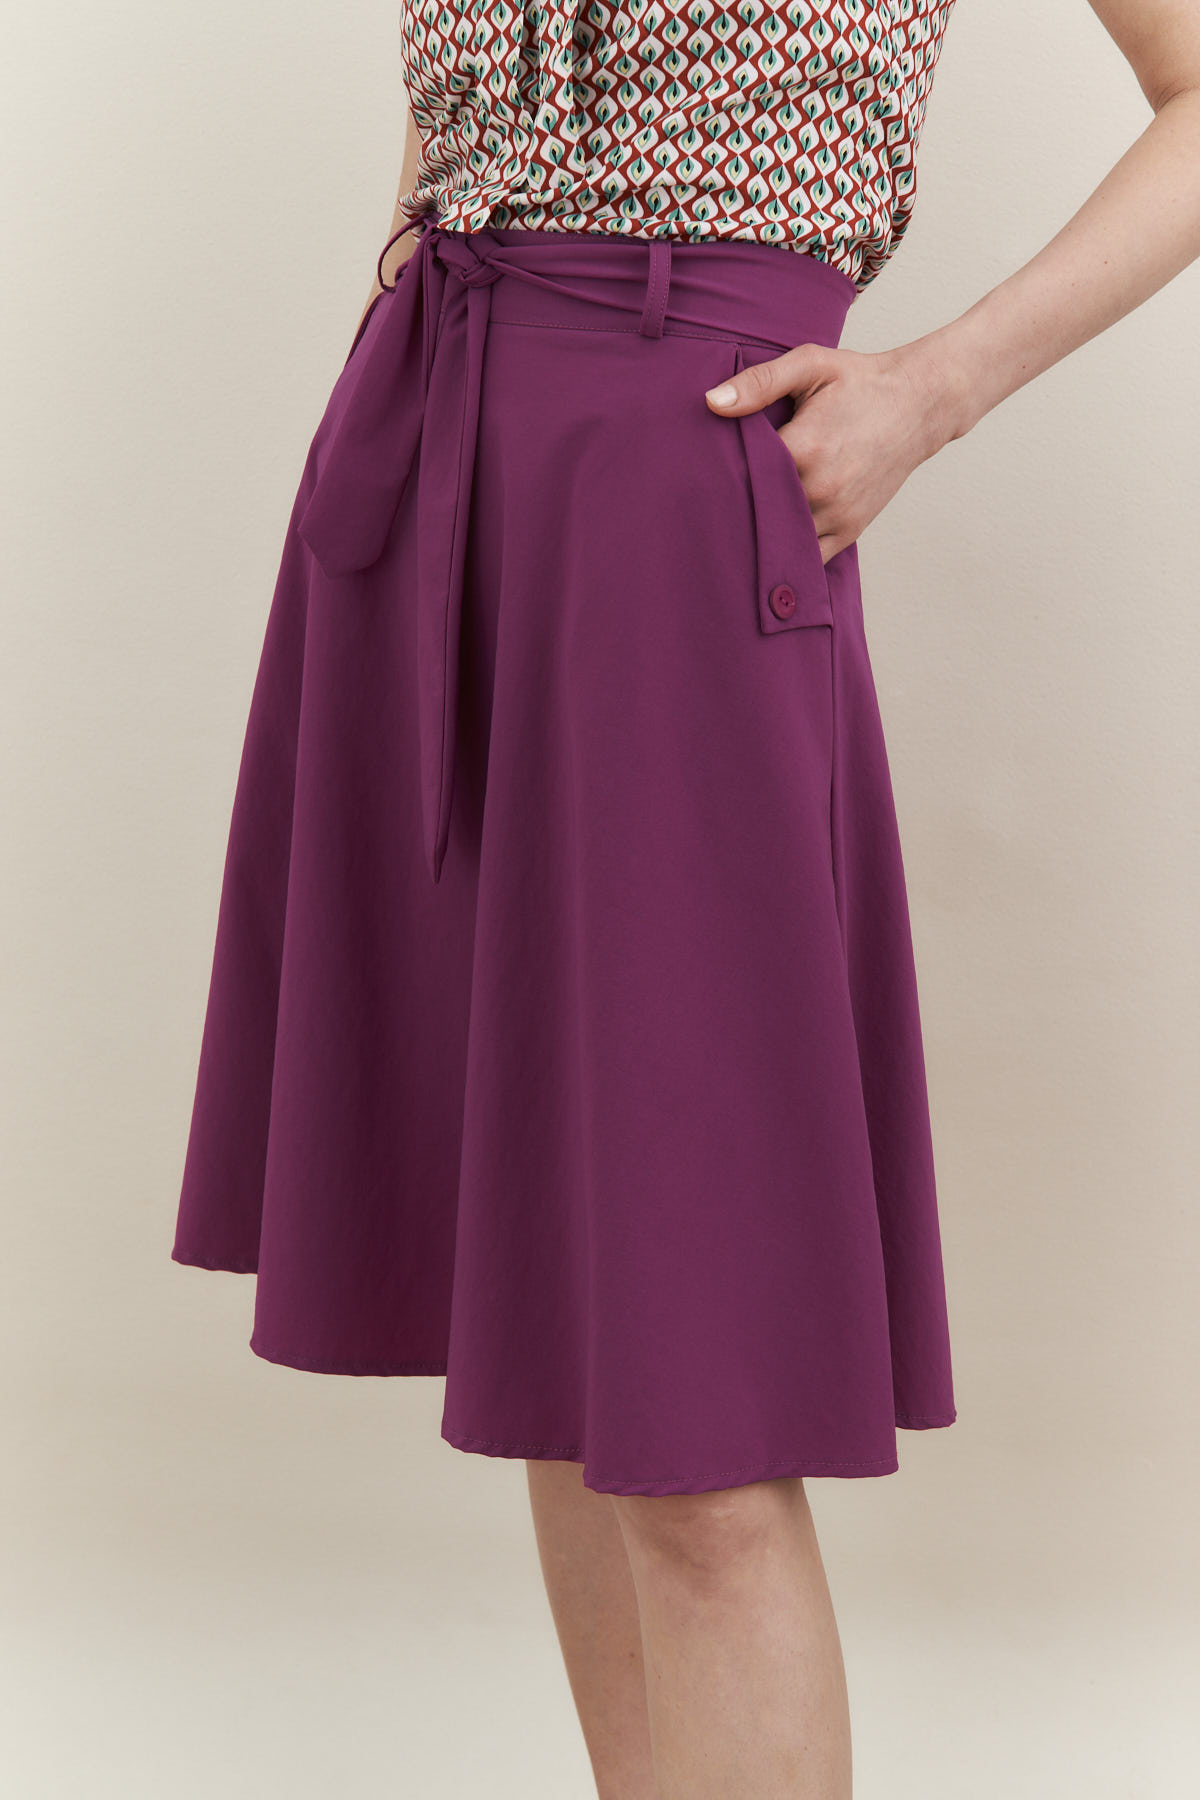 חצאית סיינה בצבע סגול